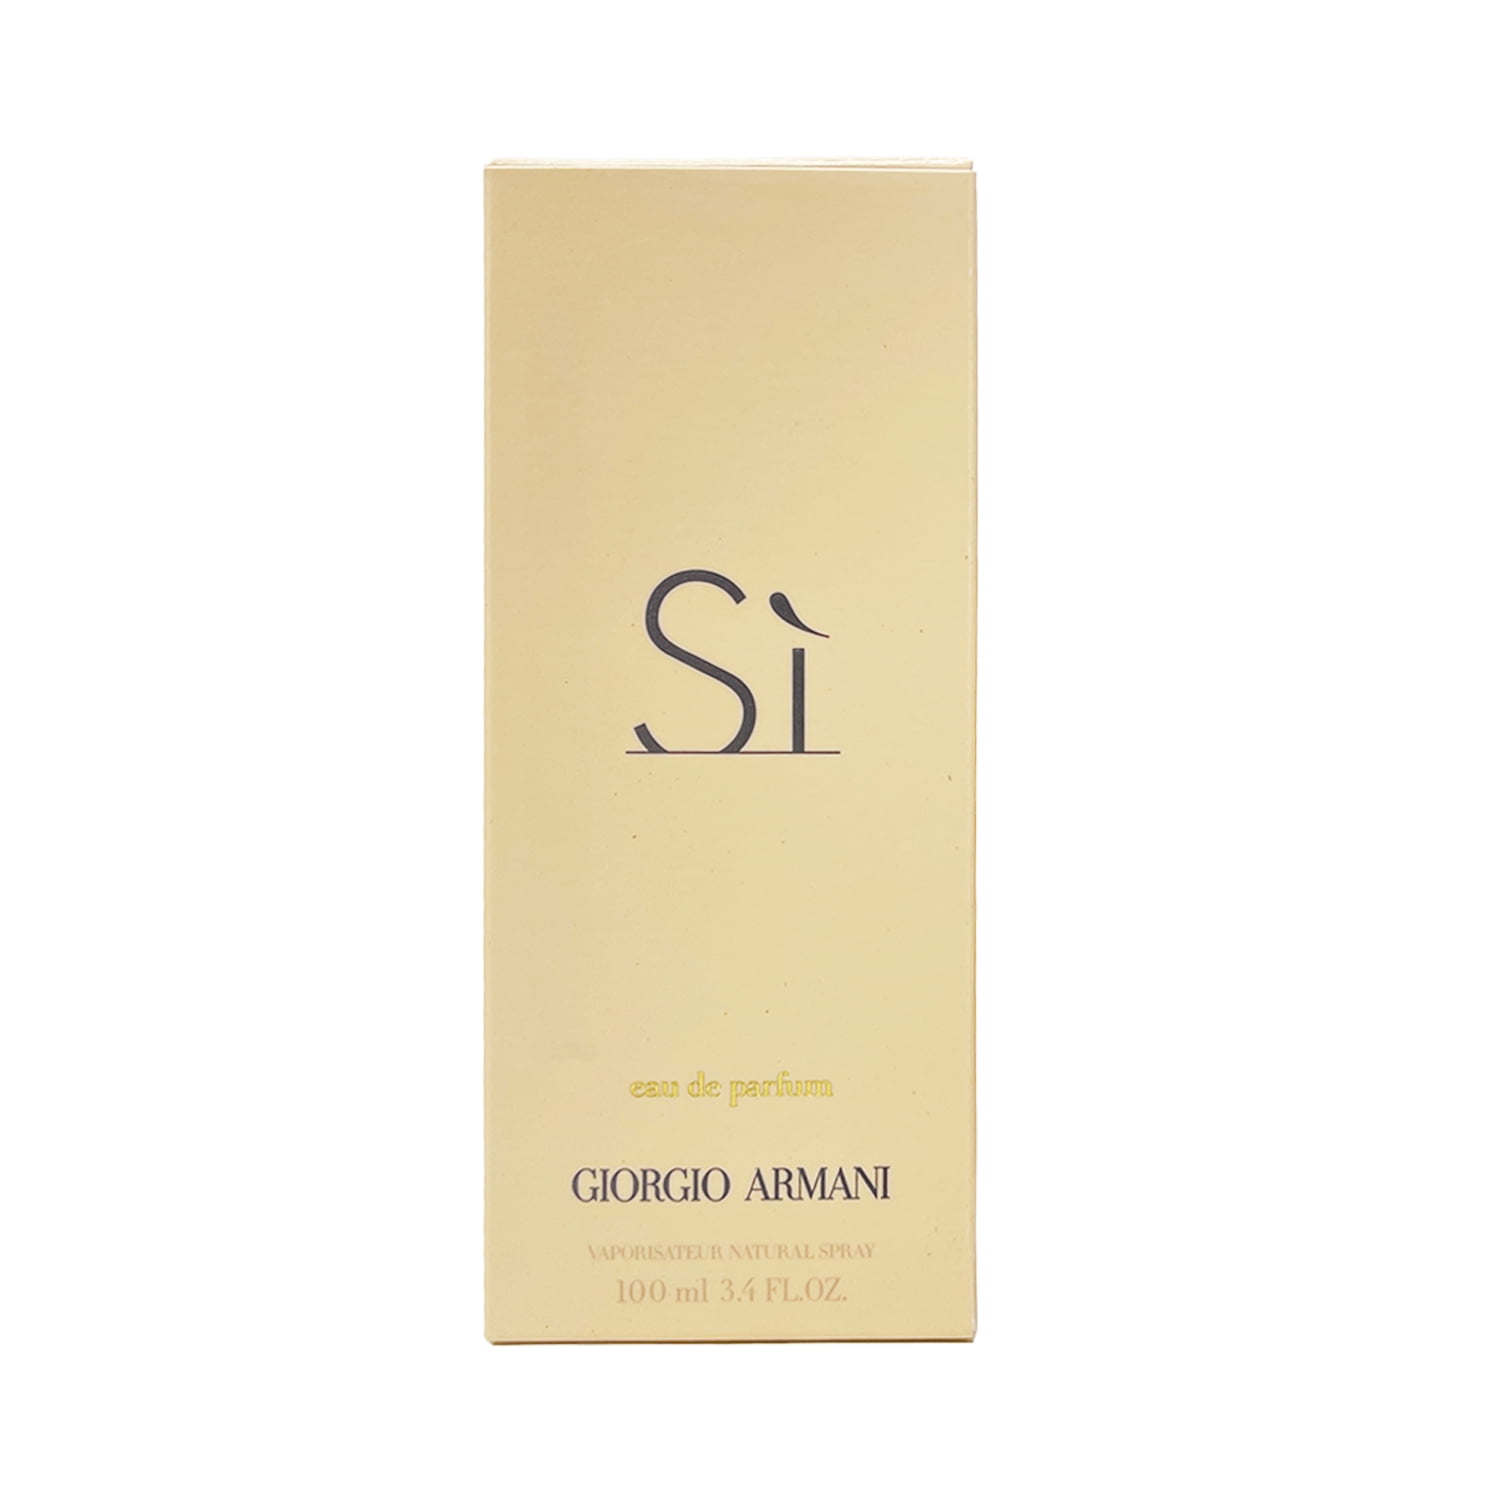 Arbejdsgiver bronze etage 126 Value) Giorgio Armani Si Eau De Parfum, Perfume for Women, 3.4 Oz -  Walmart.com